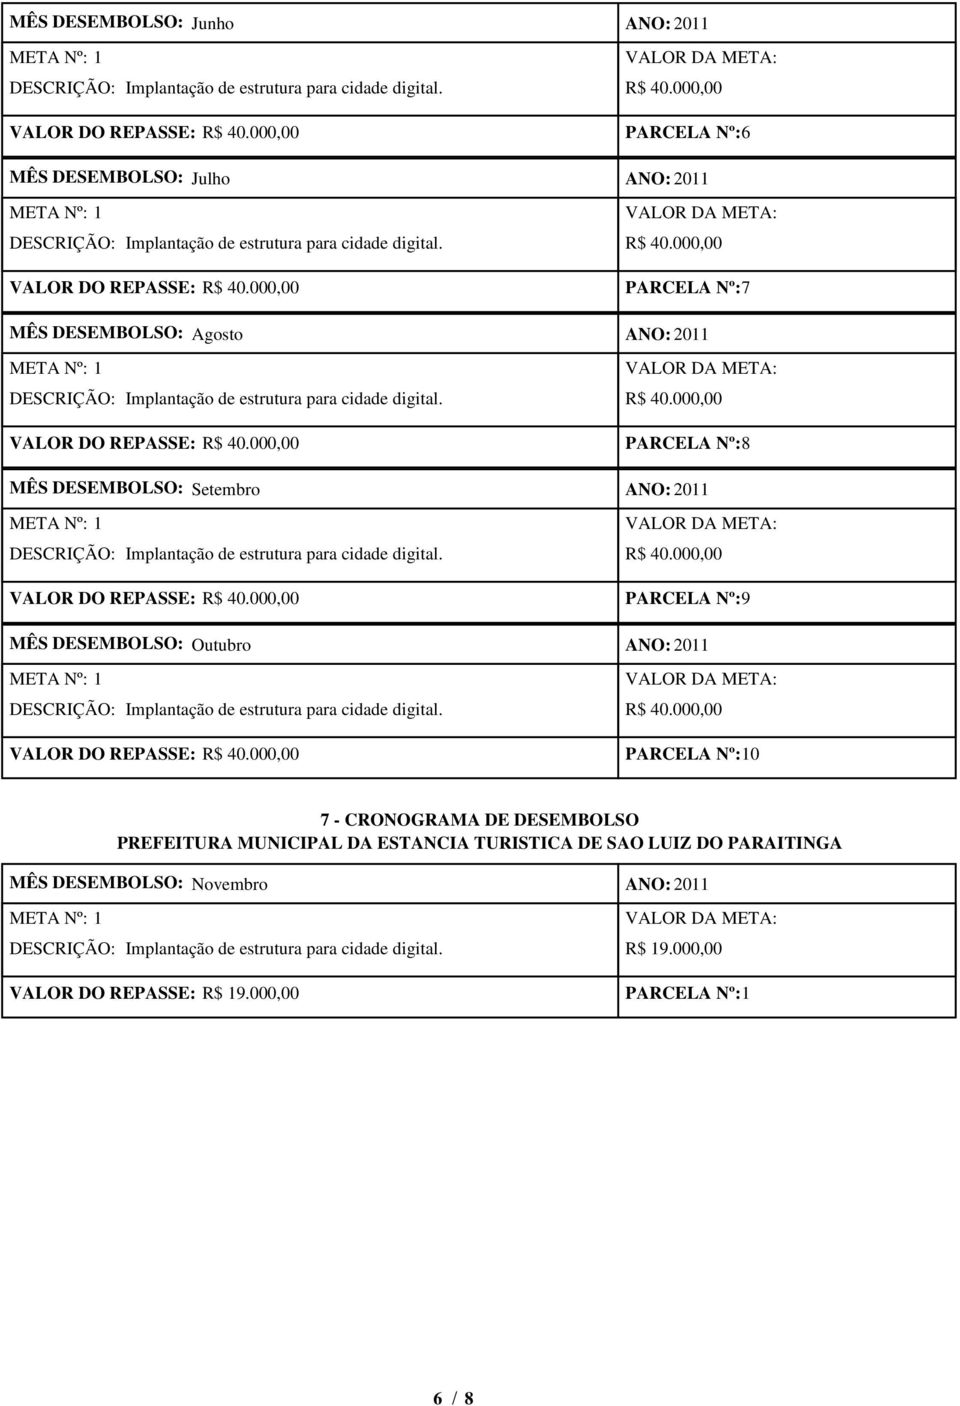 DESCRIÇÃO: 7 - CRONOGRAMA DE DESEMBOLSO PREFEITURA MUNICIPAL DA ESTANCIA TURISTICA DE SAO LUIZ DO